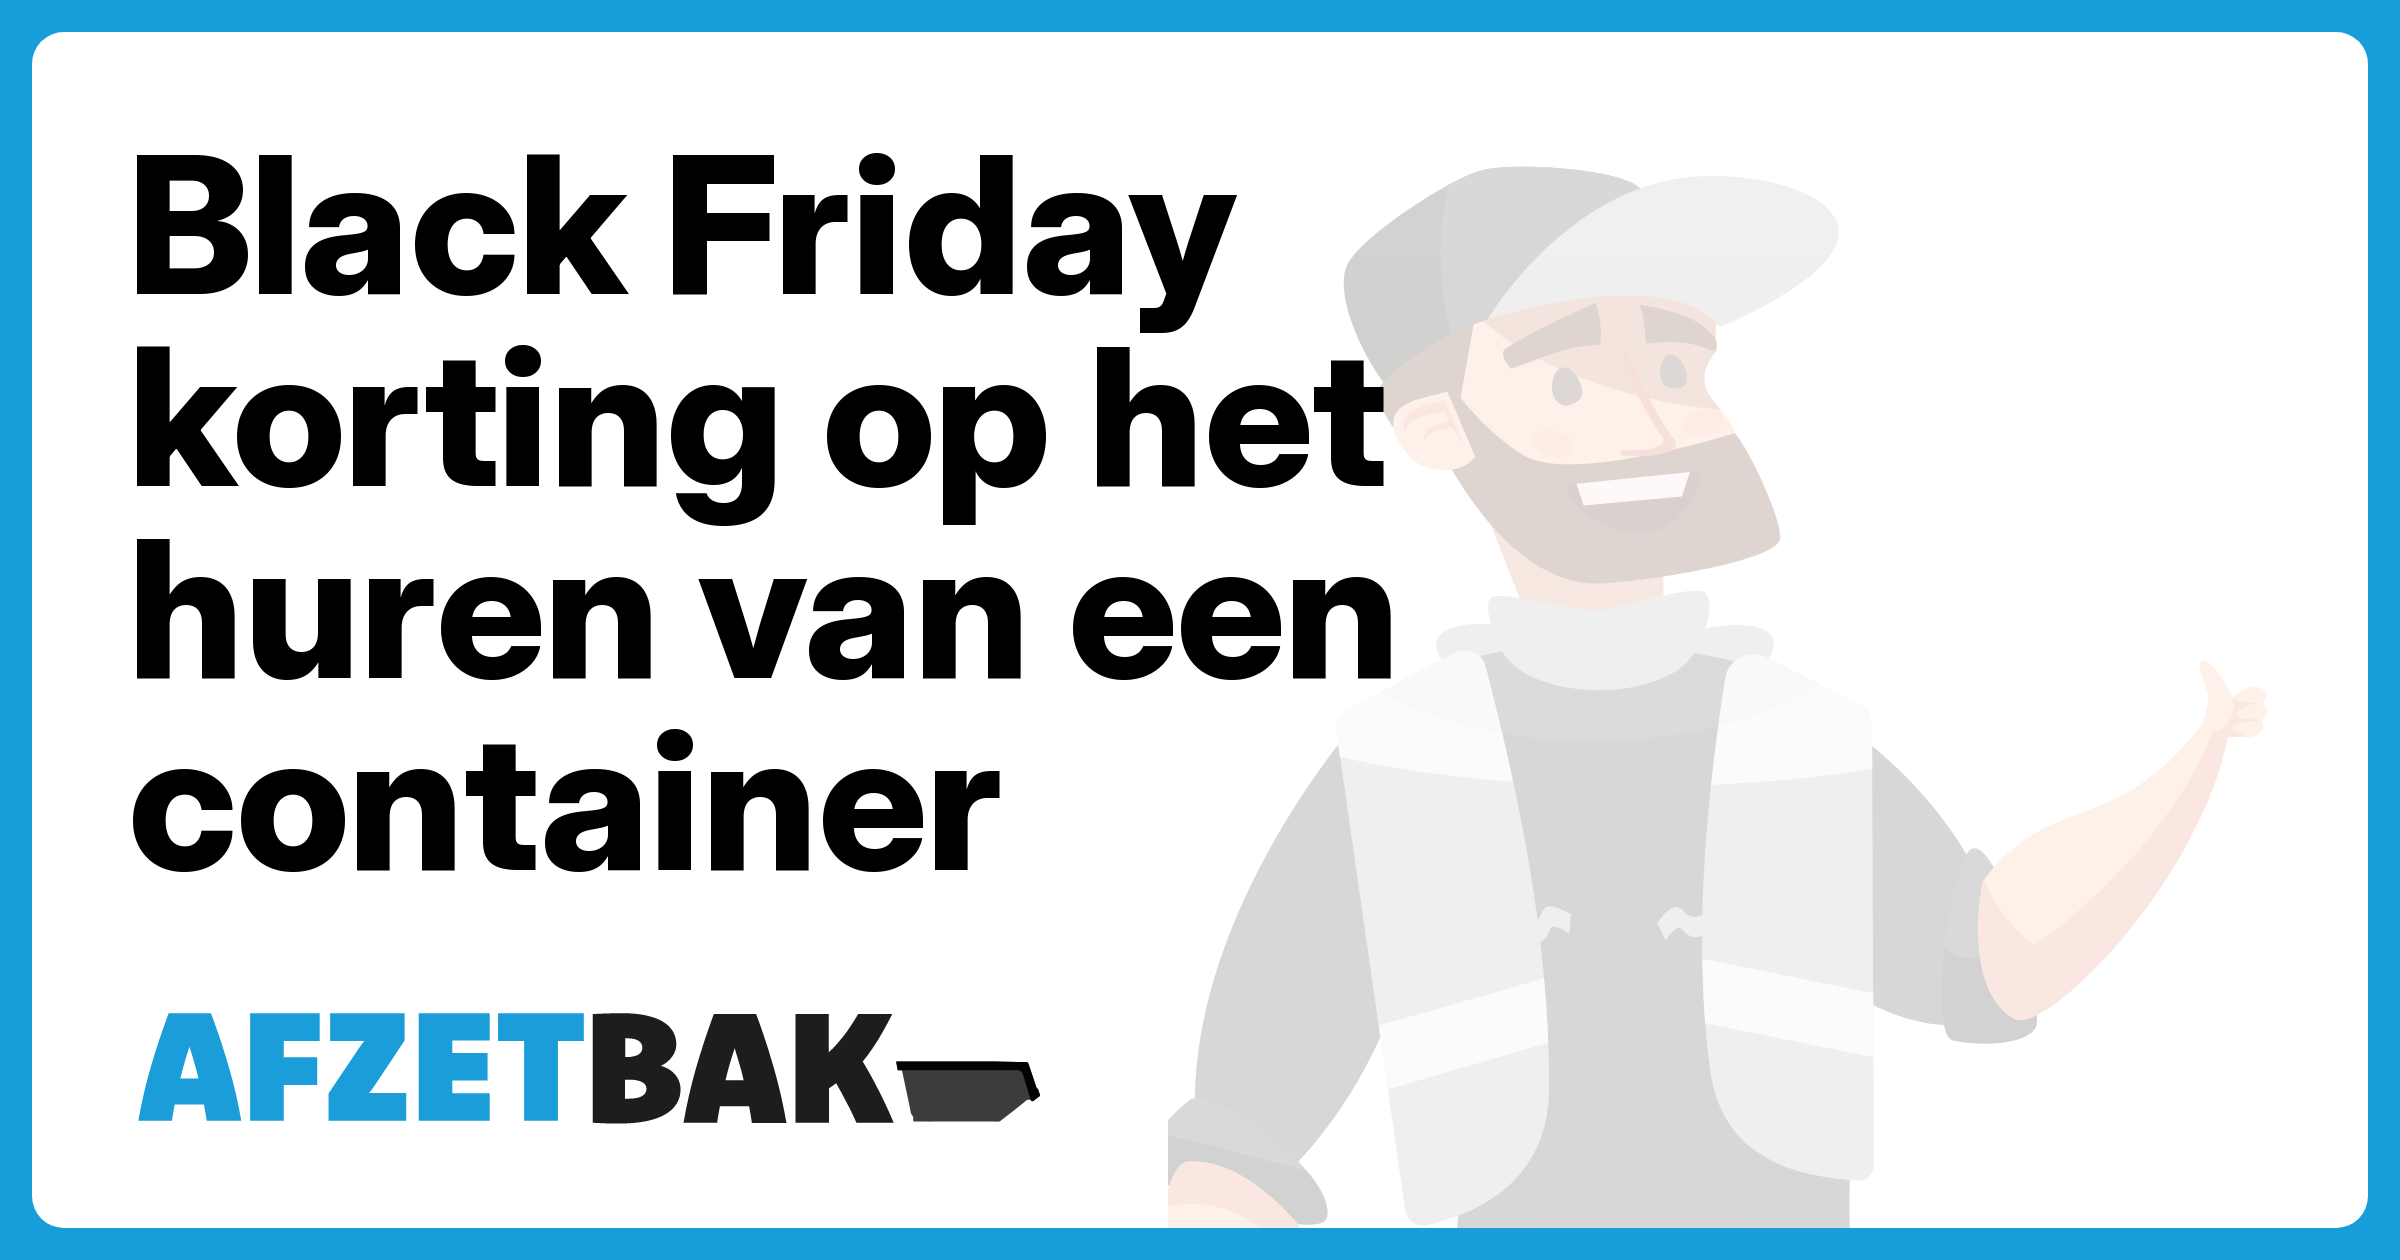 Black Friday korting op het huren van een container - Afzetbak.nl